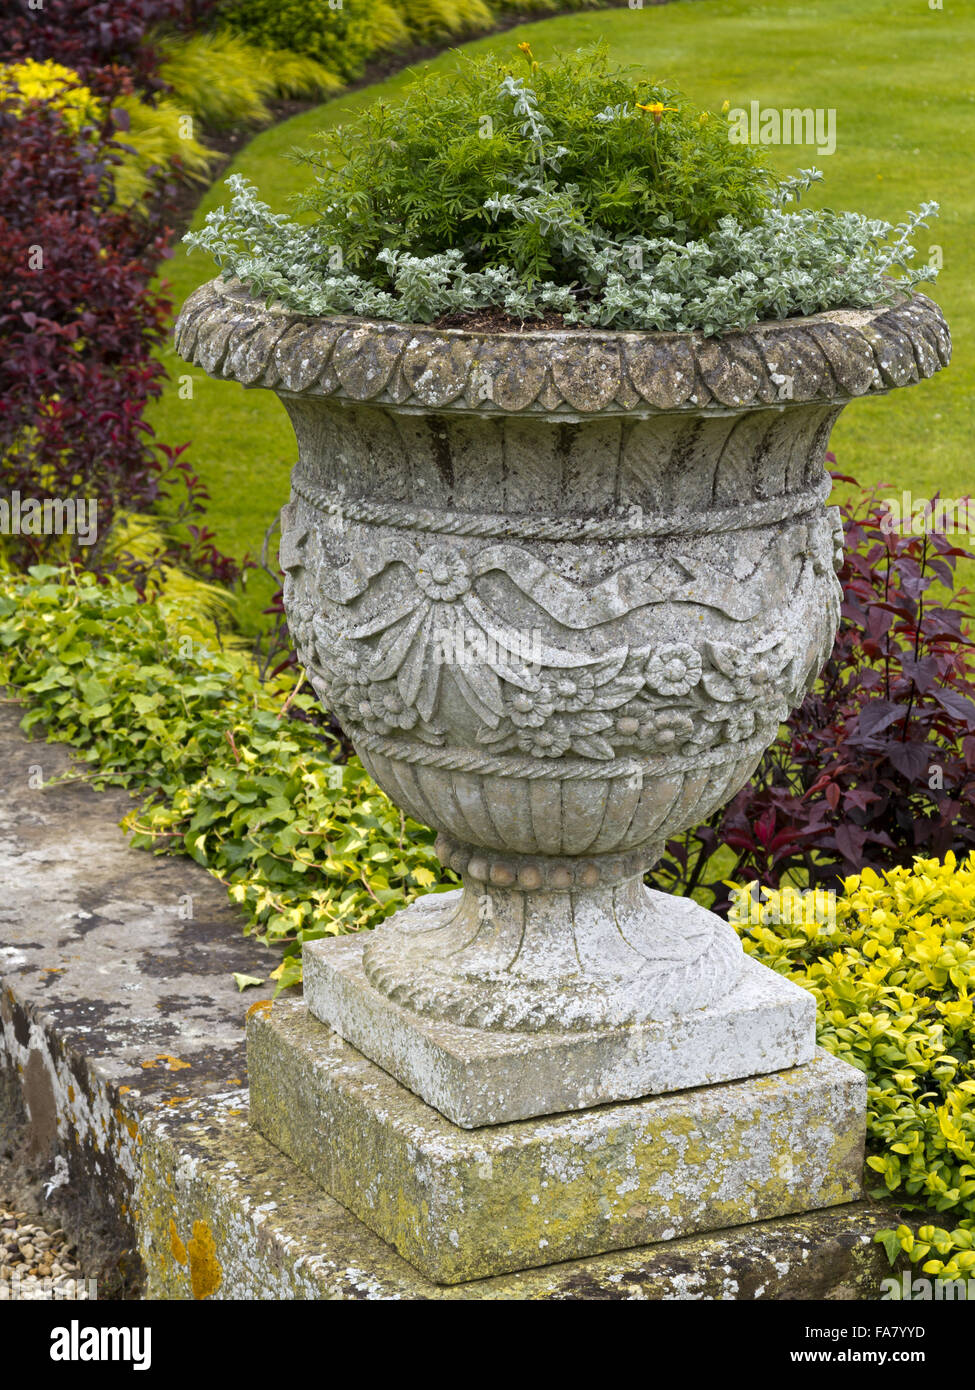 Un close up detail d'une urne de pierre plantés dans les jardins à Belton House, Lincolnshire Banque D'Images